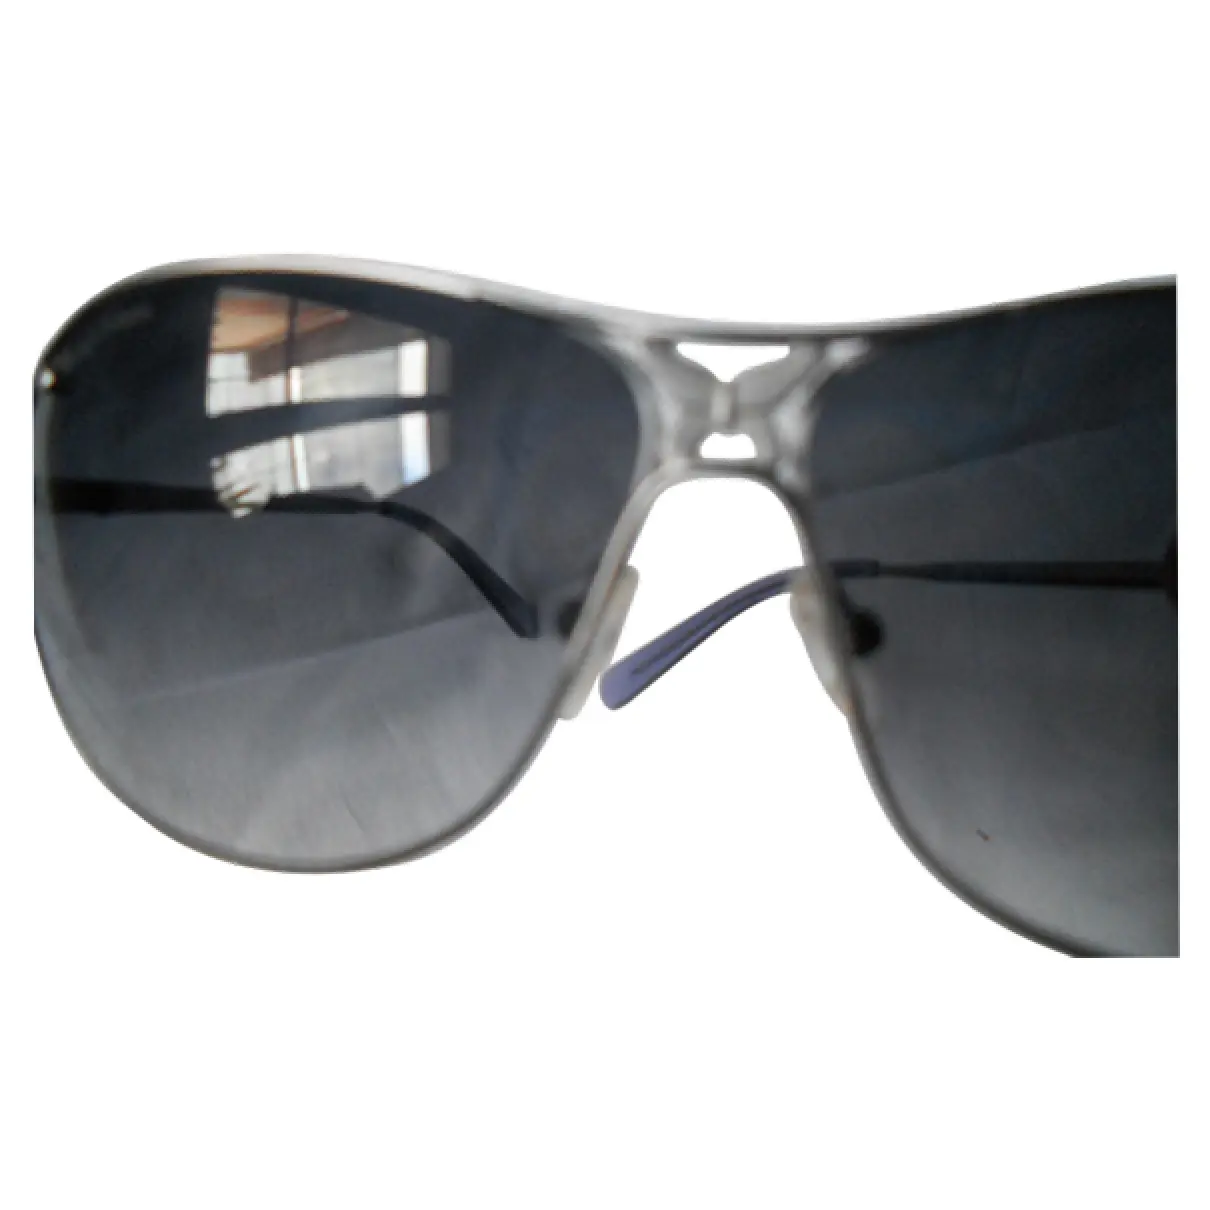 Buy Zadig & Voltaire Aviator sunglasses online